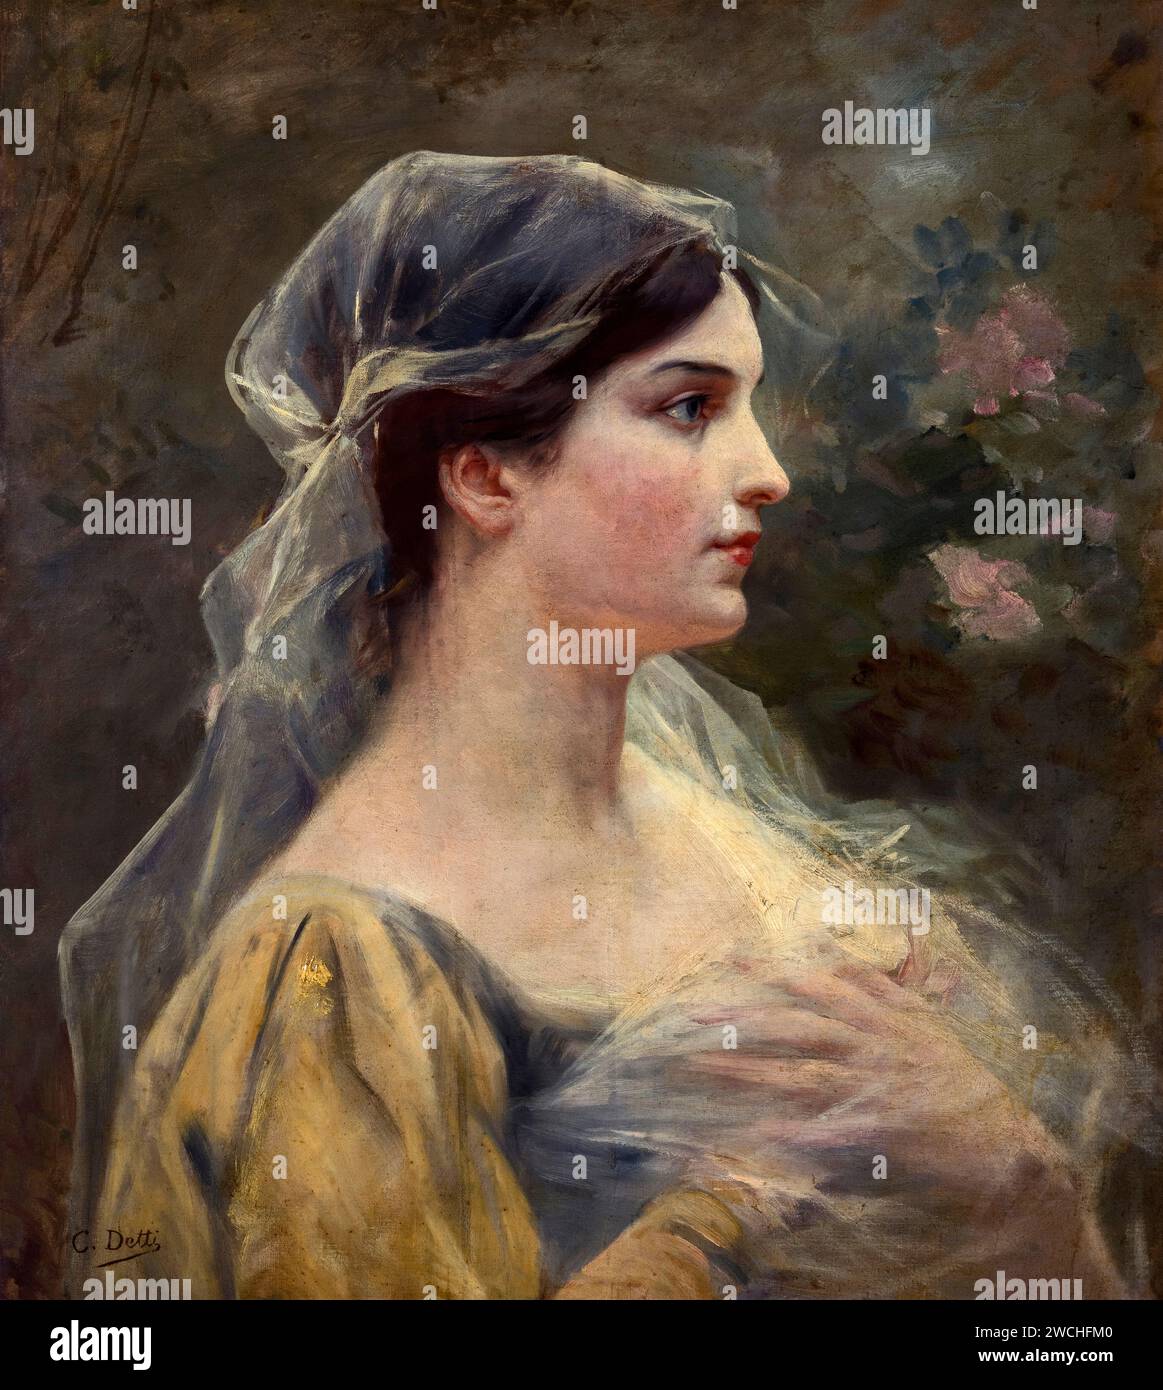 Profilo di Vergine  - olio su tela - Cesare Detti  - XIX  secolo - Reggio Emilia, Galleria Luigi Parmeggiani Stock Photo